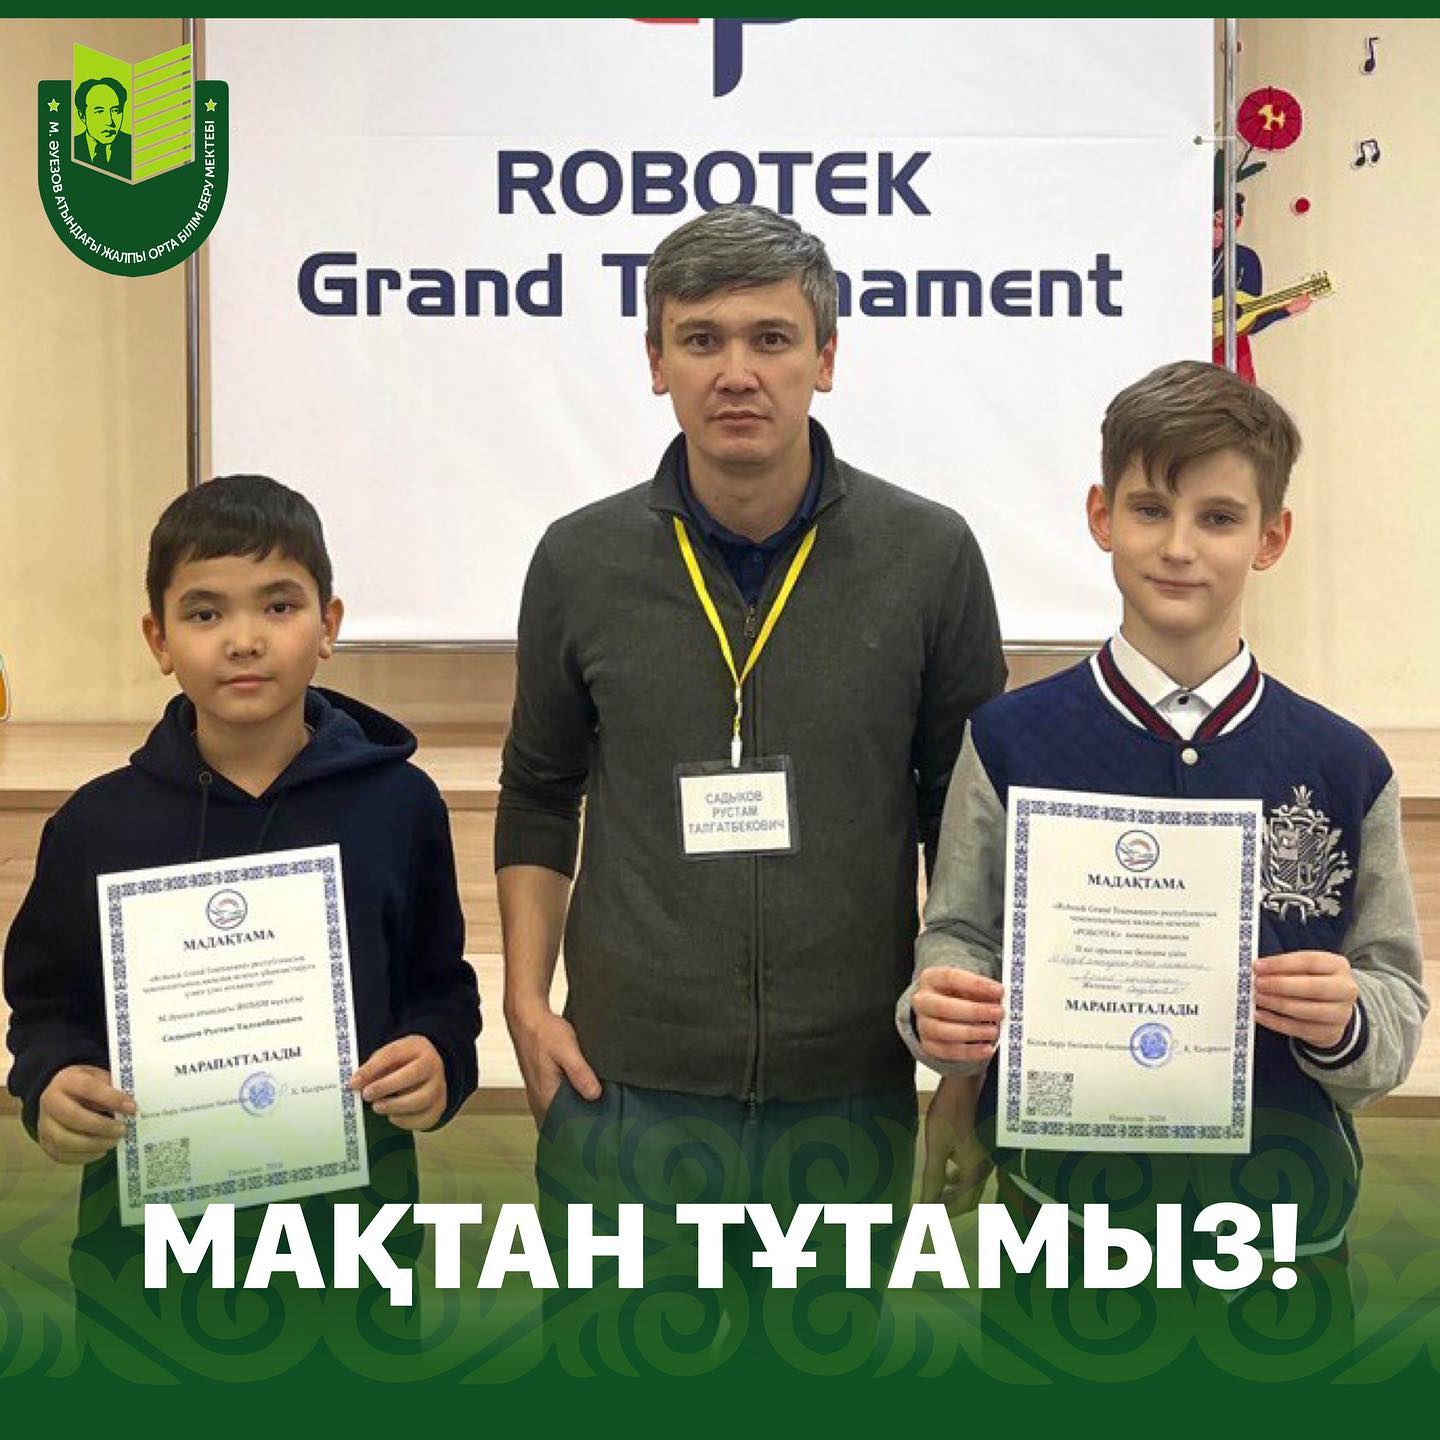 17 қаңтарда «Robotek Grand Tournament» робототехника бойынша республикалық чемпионаттың қалалық кезеңі өтті.